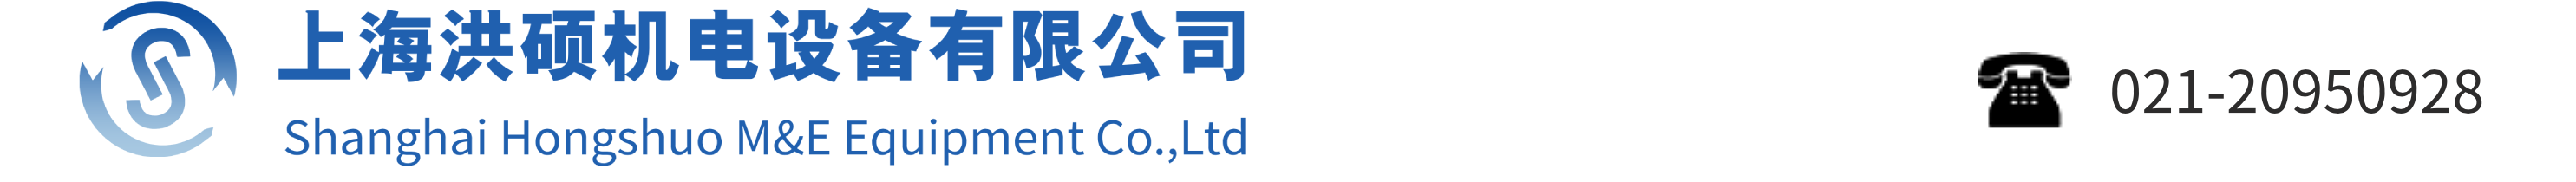 上海洪硕机电设备有限公司网站Logo